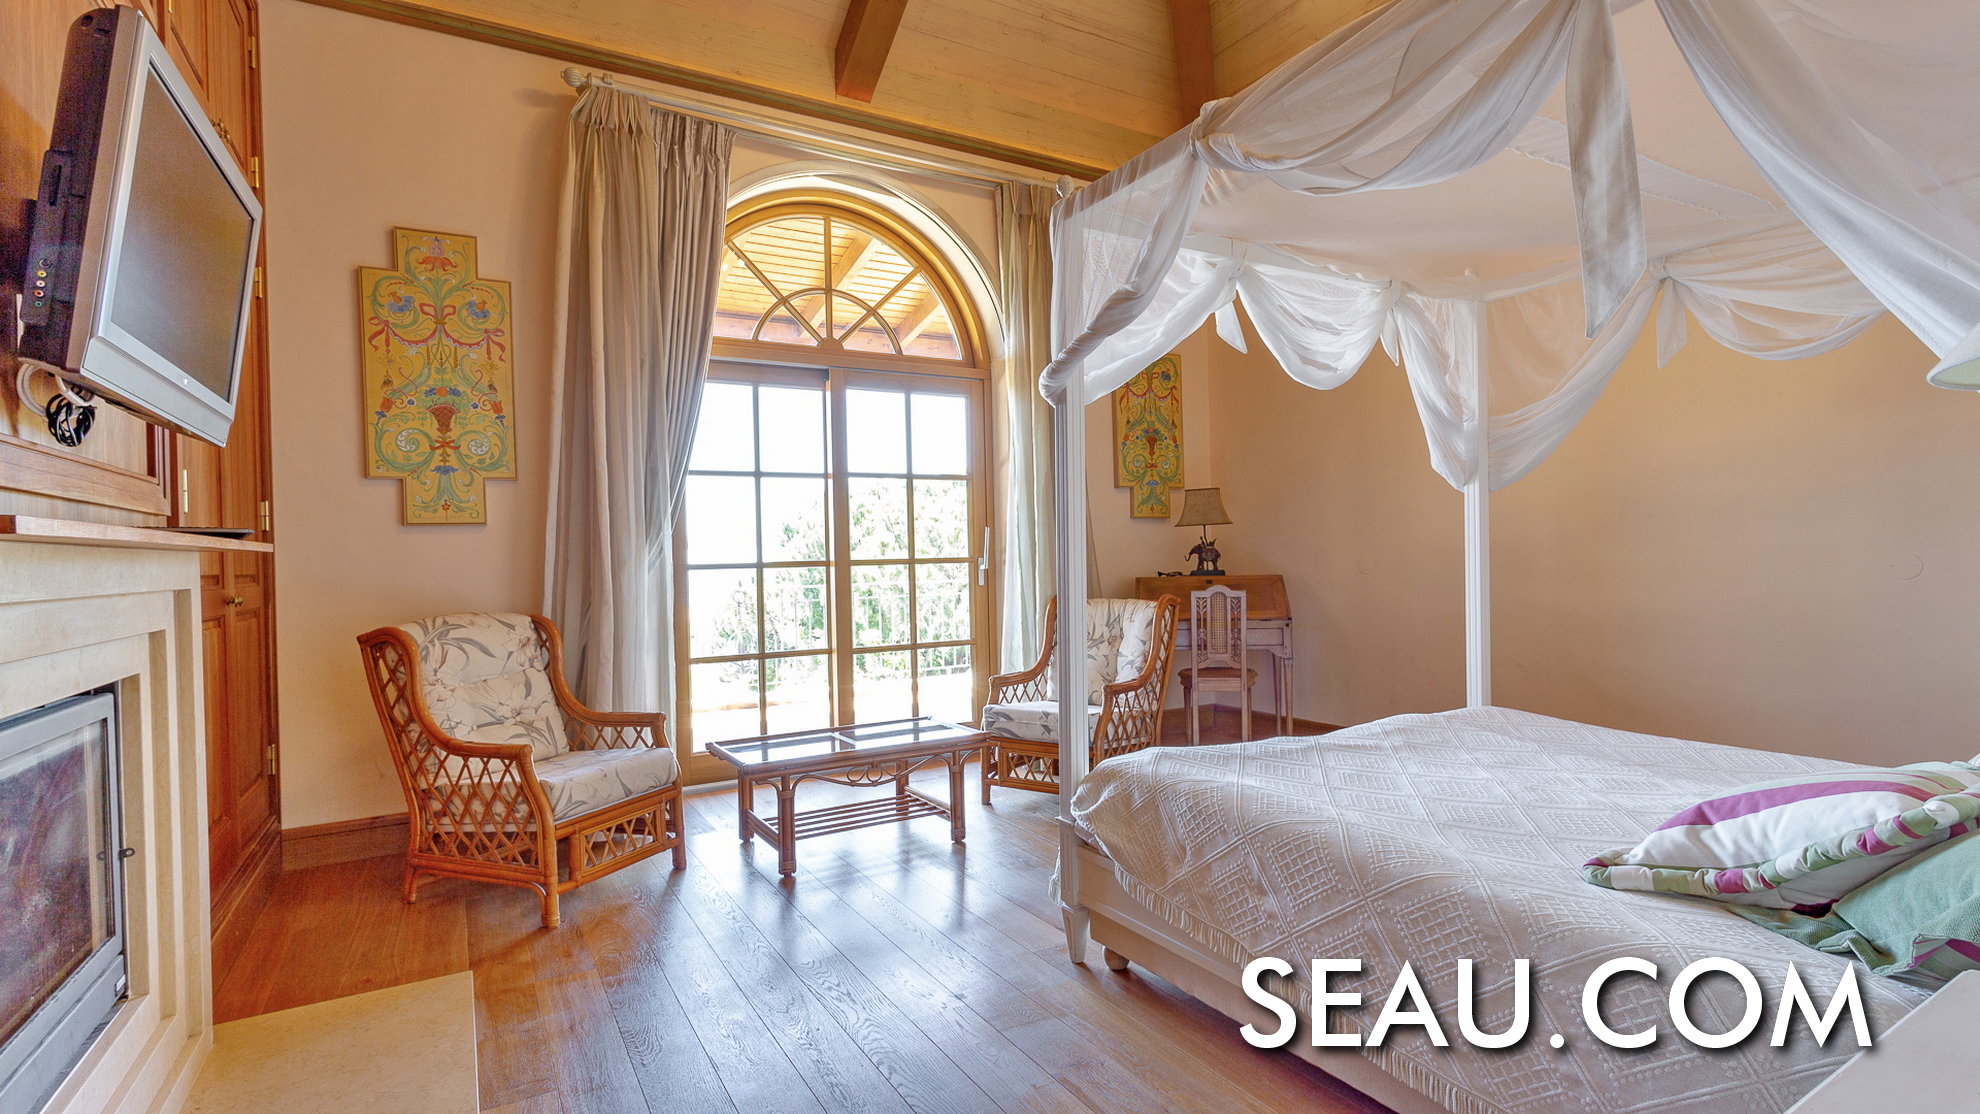 Os quartos en-suite no primeiro andar, com lareira, materiais em madeira natural, e acesso à varanda e vistas.